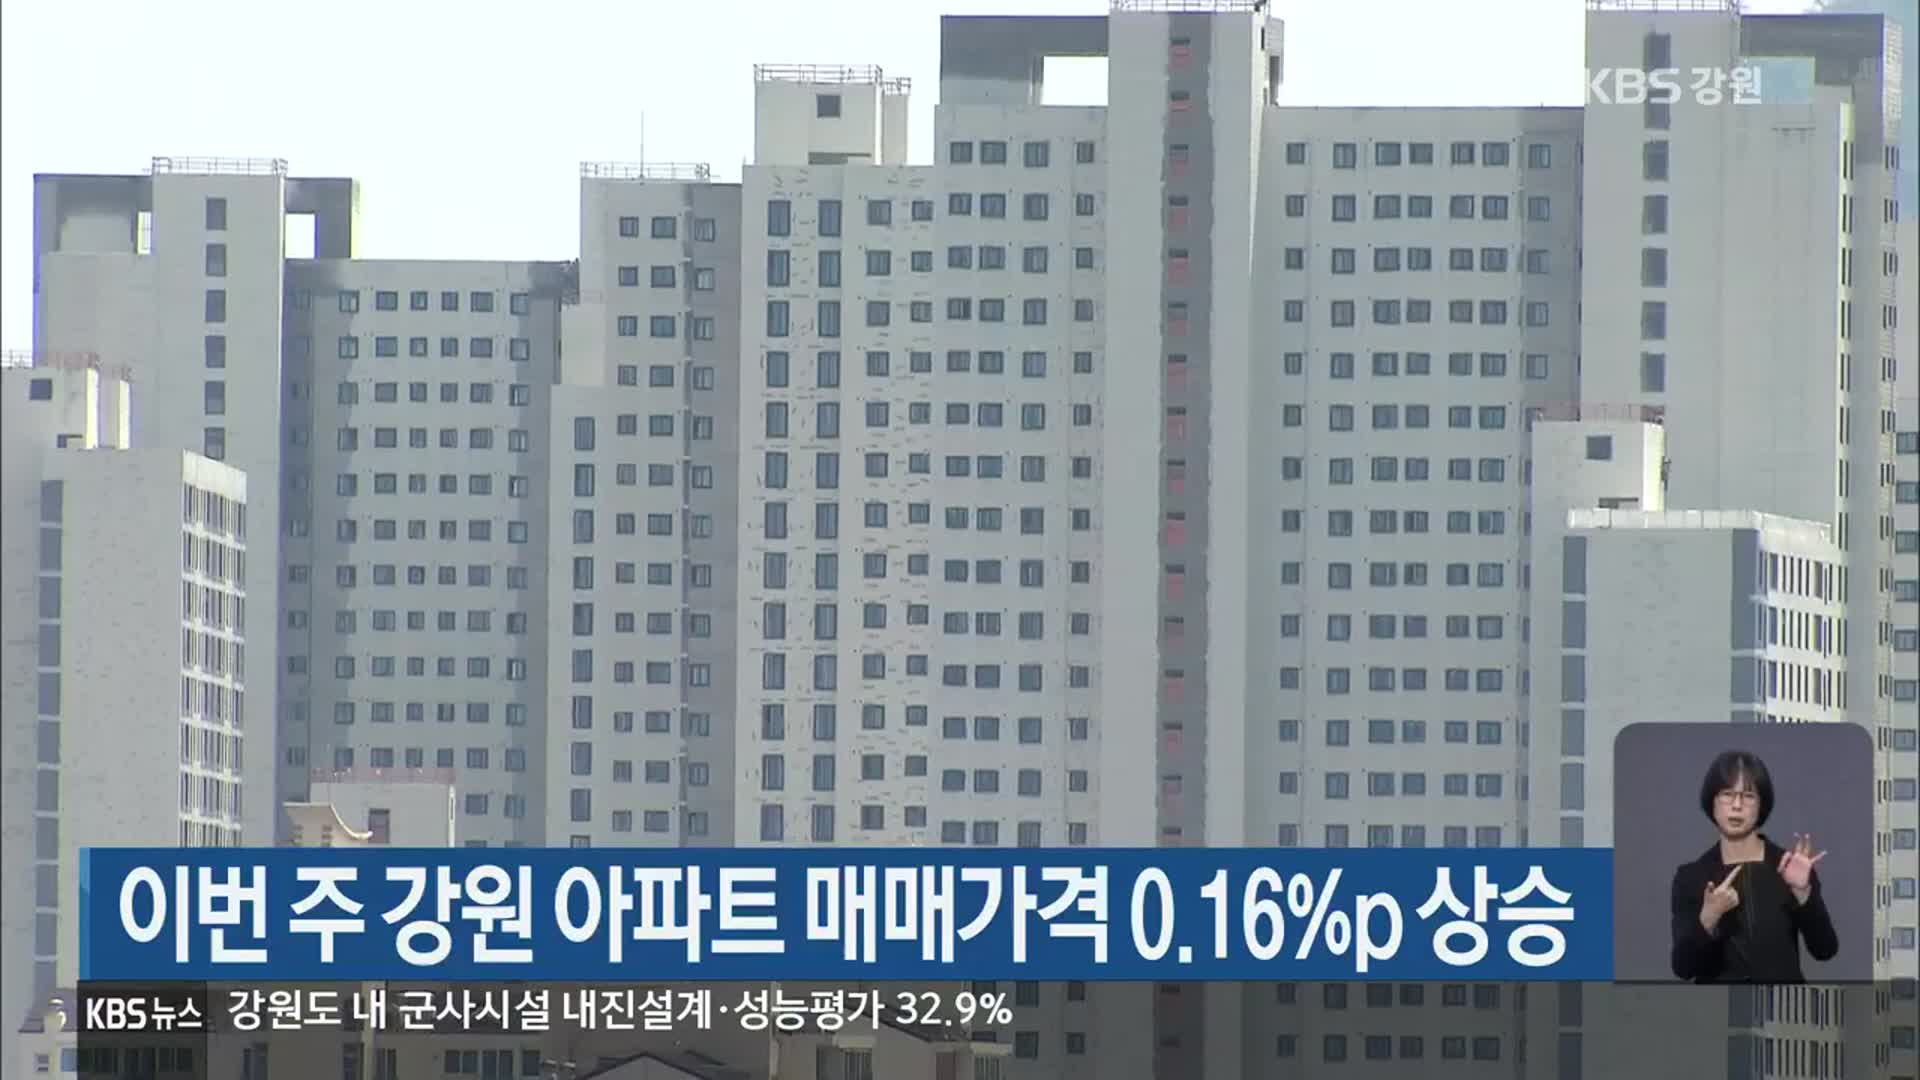 이번 주 강원 아파트 매매가격 0.16%p 상승